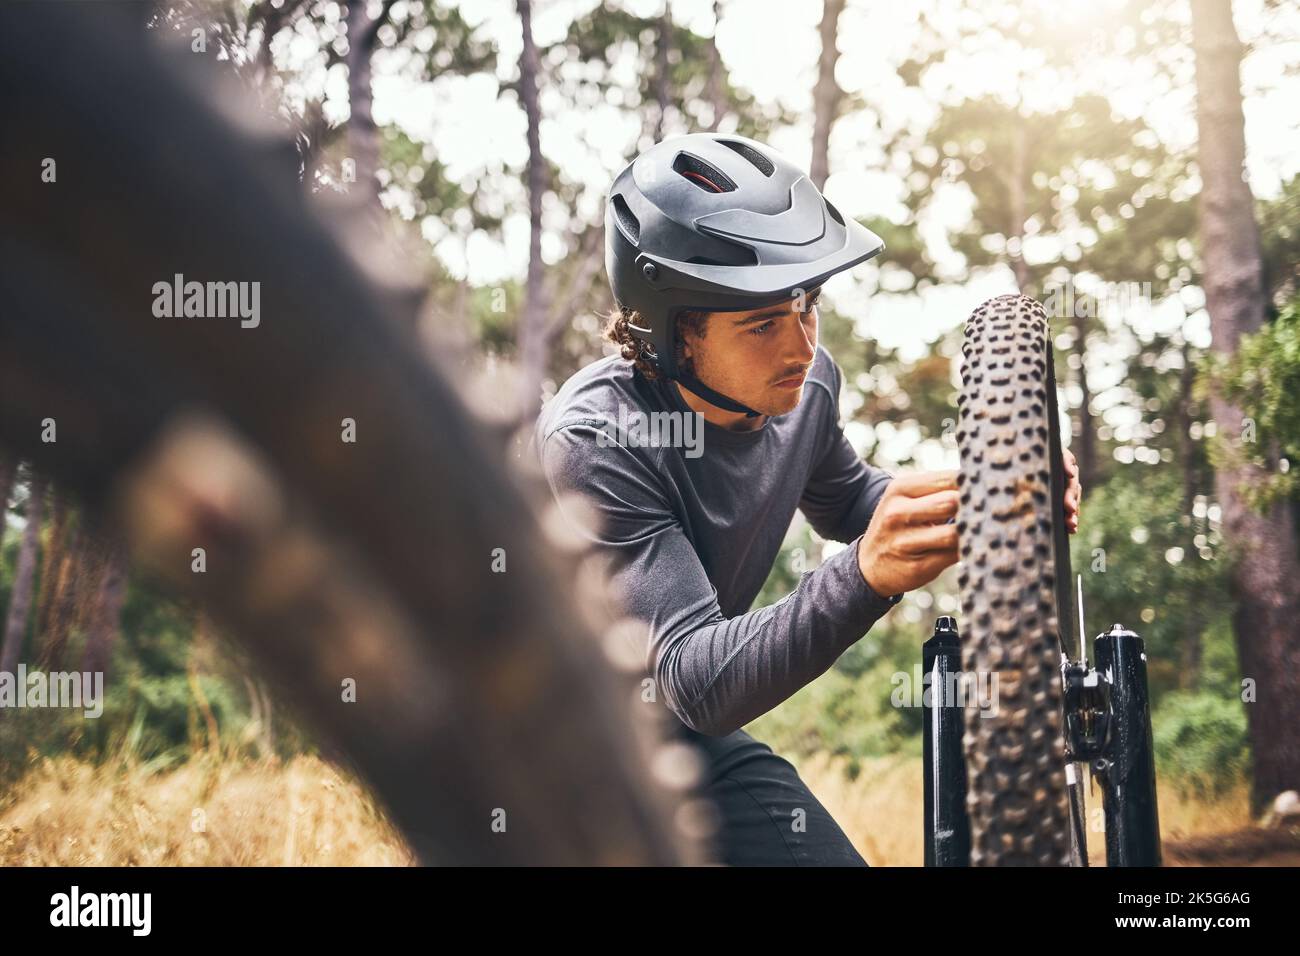 Radfahren, Abenteuerpfad und Fahrradreparatur, Mann reparieren Rad im Wald. Natur, Mountainbiken und Radfahrer, Outdoor-Fahrradpflege in Australien Stockfoto